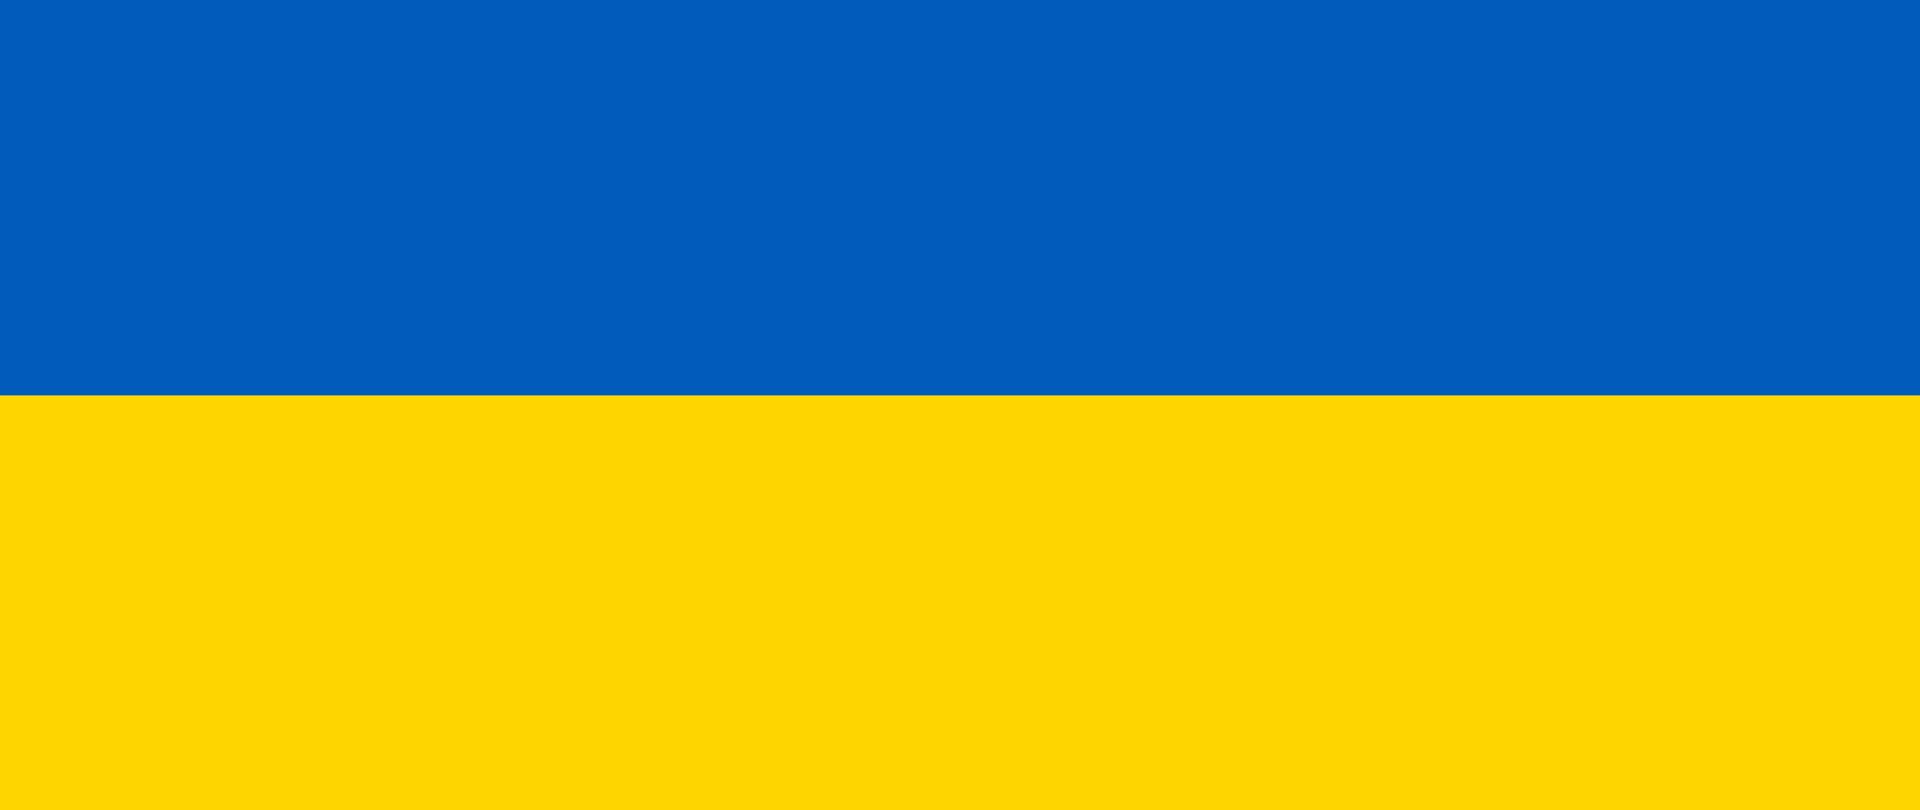 Flaga Ukrainy składająca się z dwóch poziomych pasów - górny pas koloru niebieskiego, dolny koloru żółtego